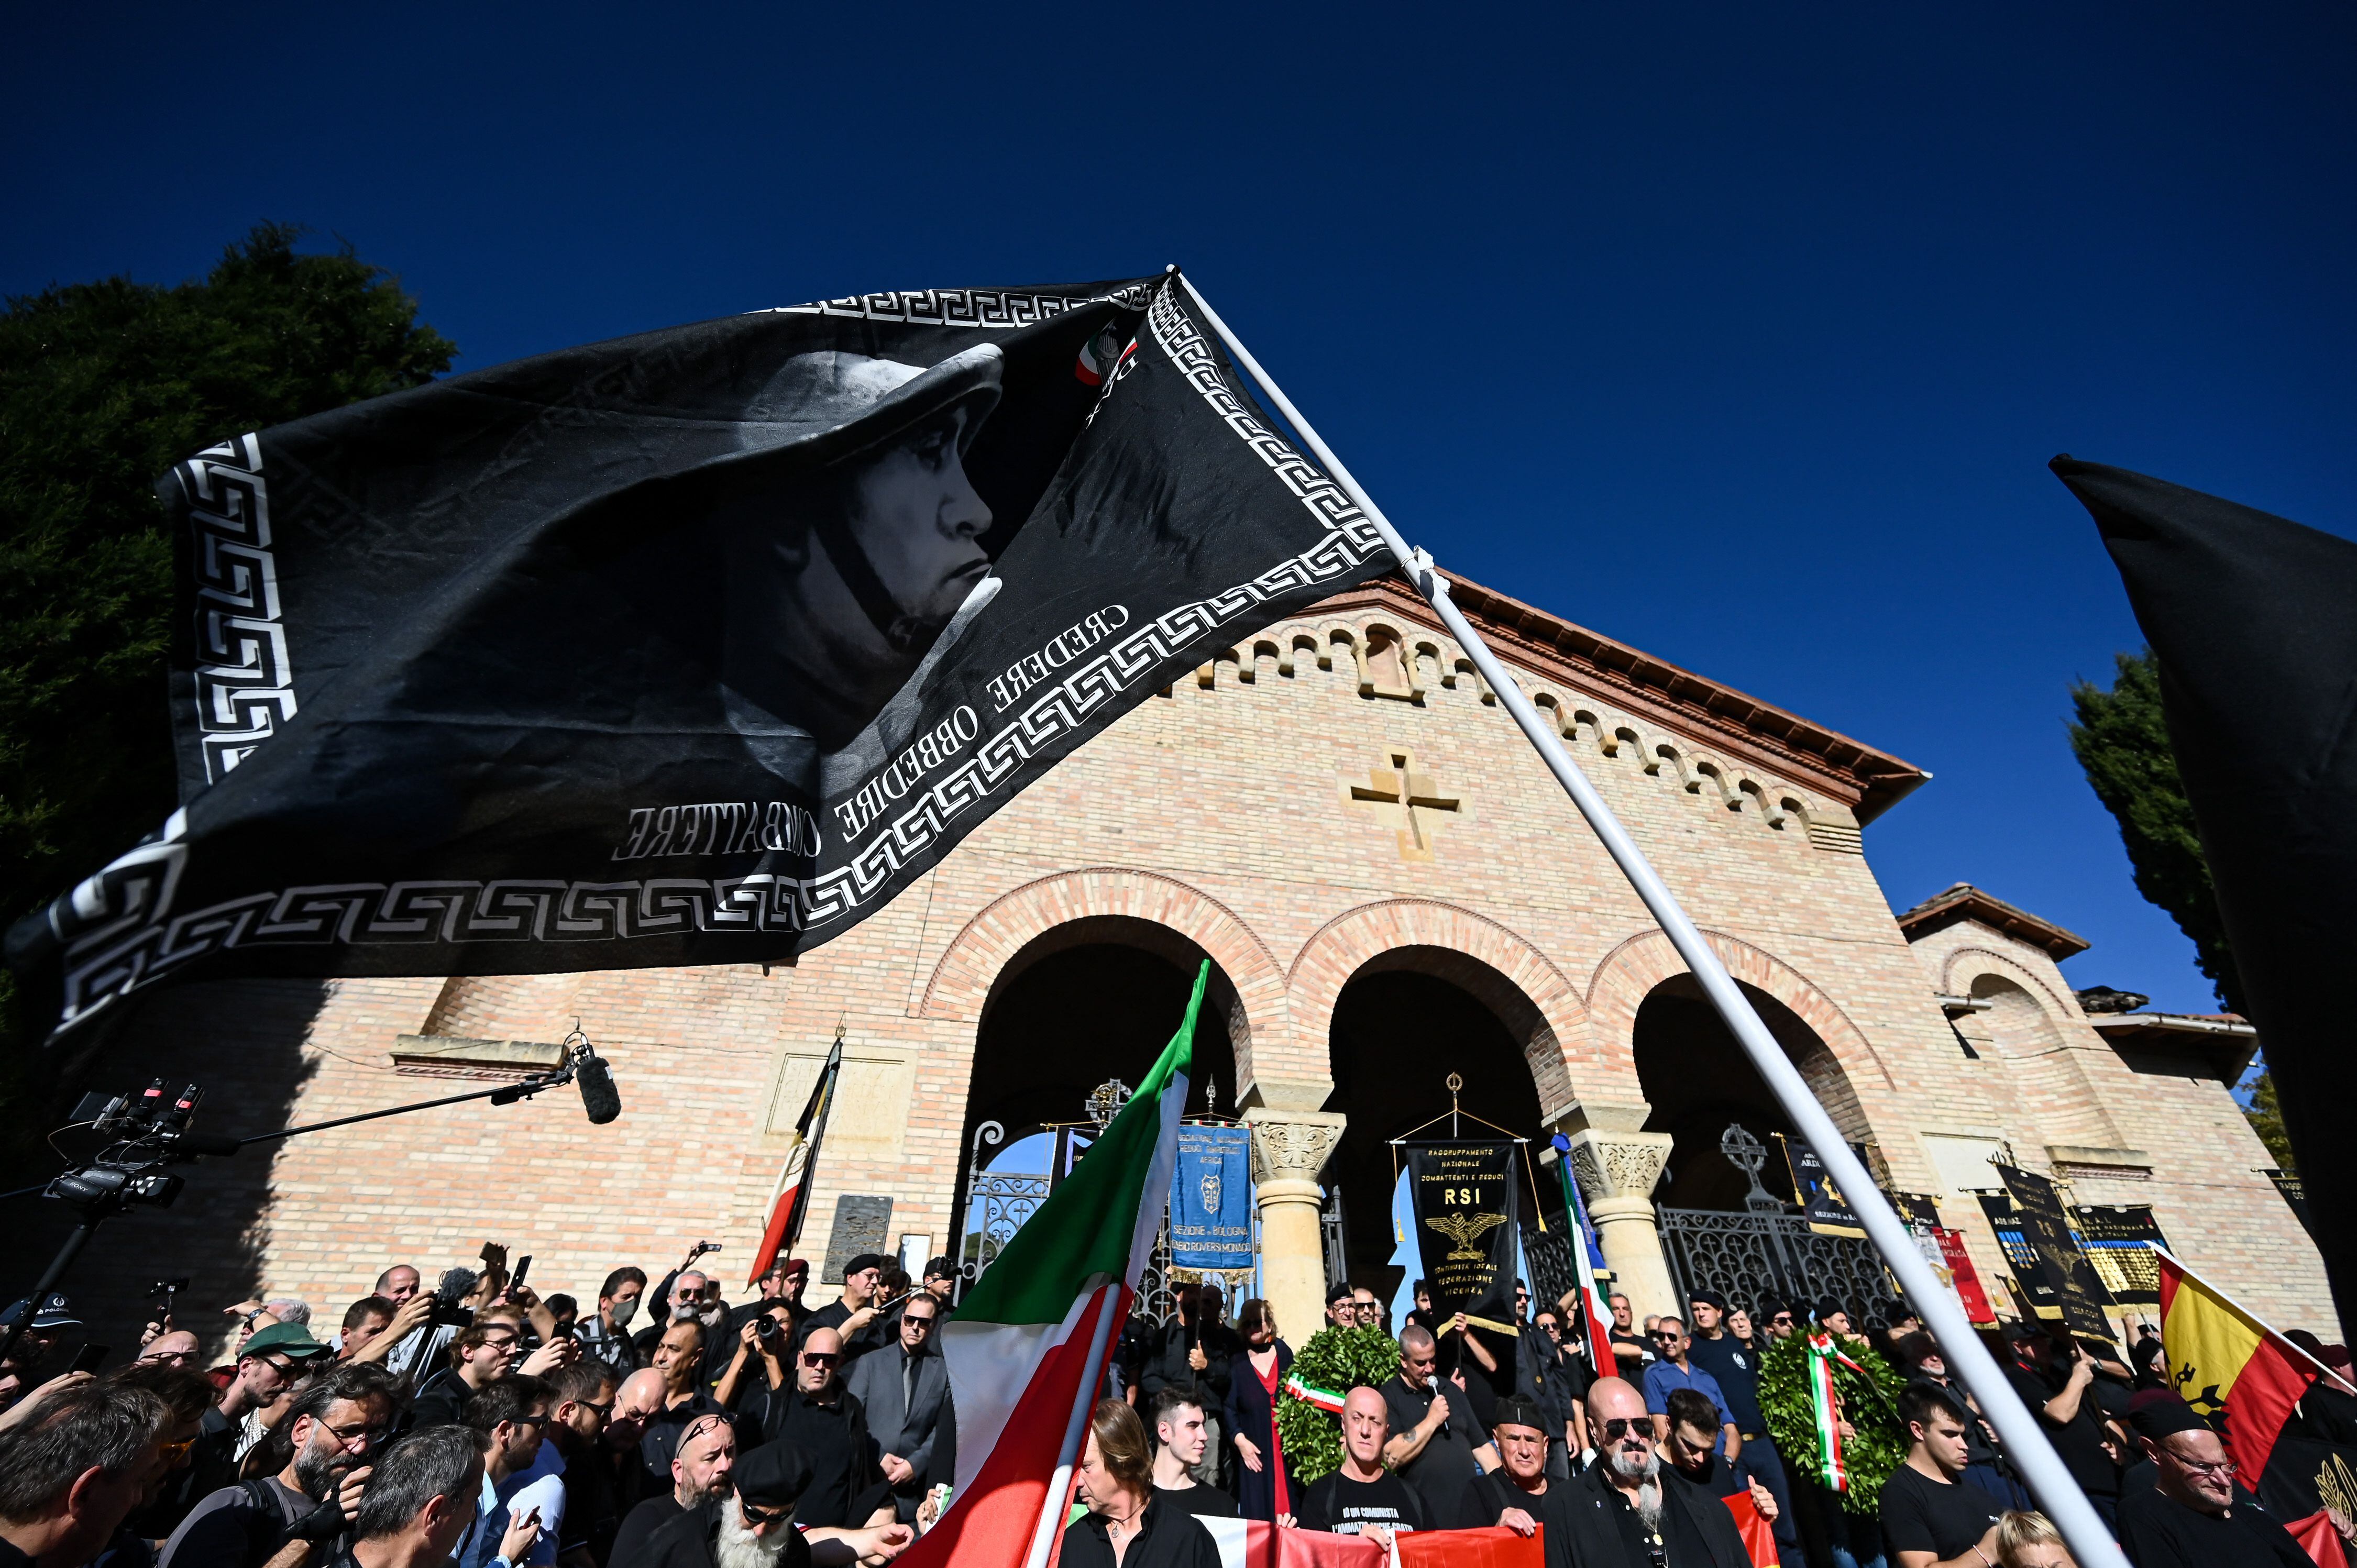 Una gigantesca bandera de color negro, con el rostro de Mussolini, ondeó durante la concentración.